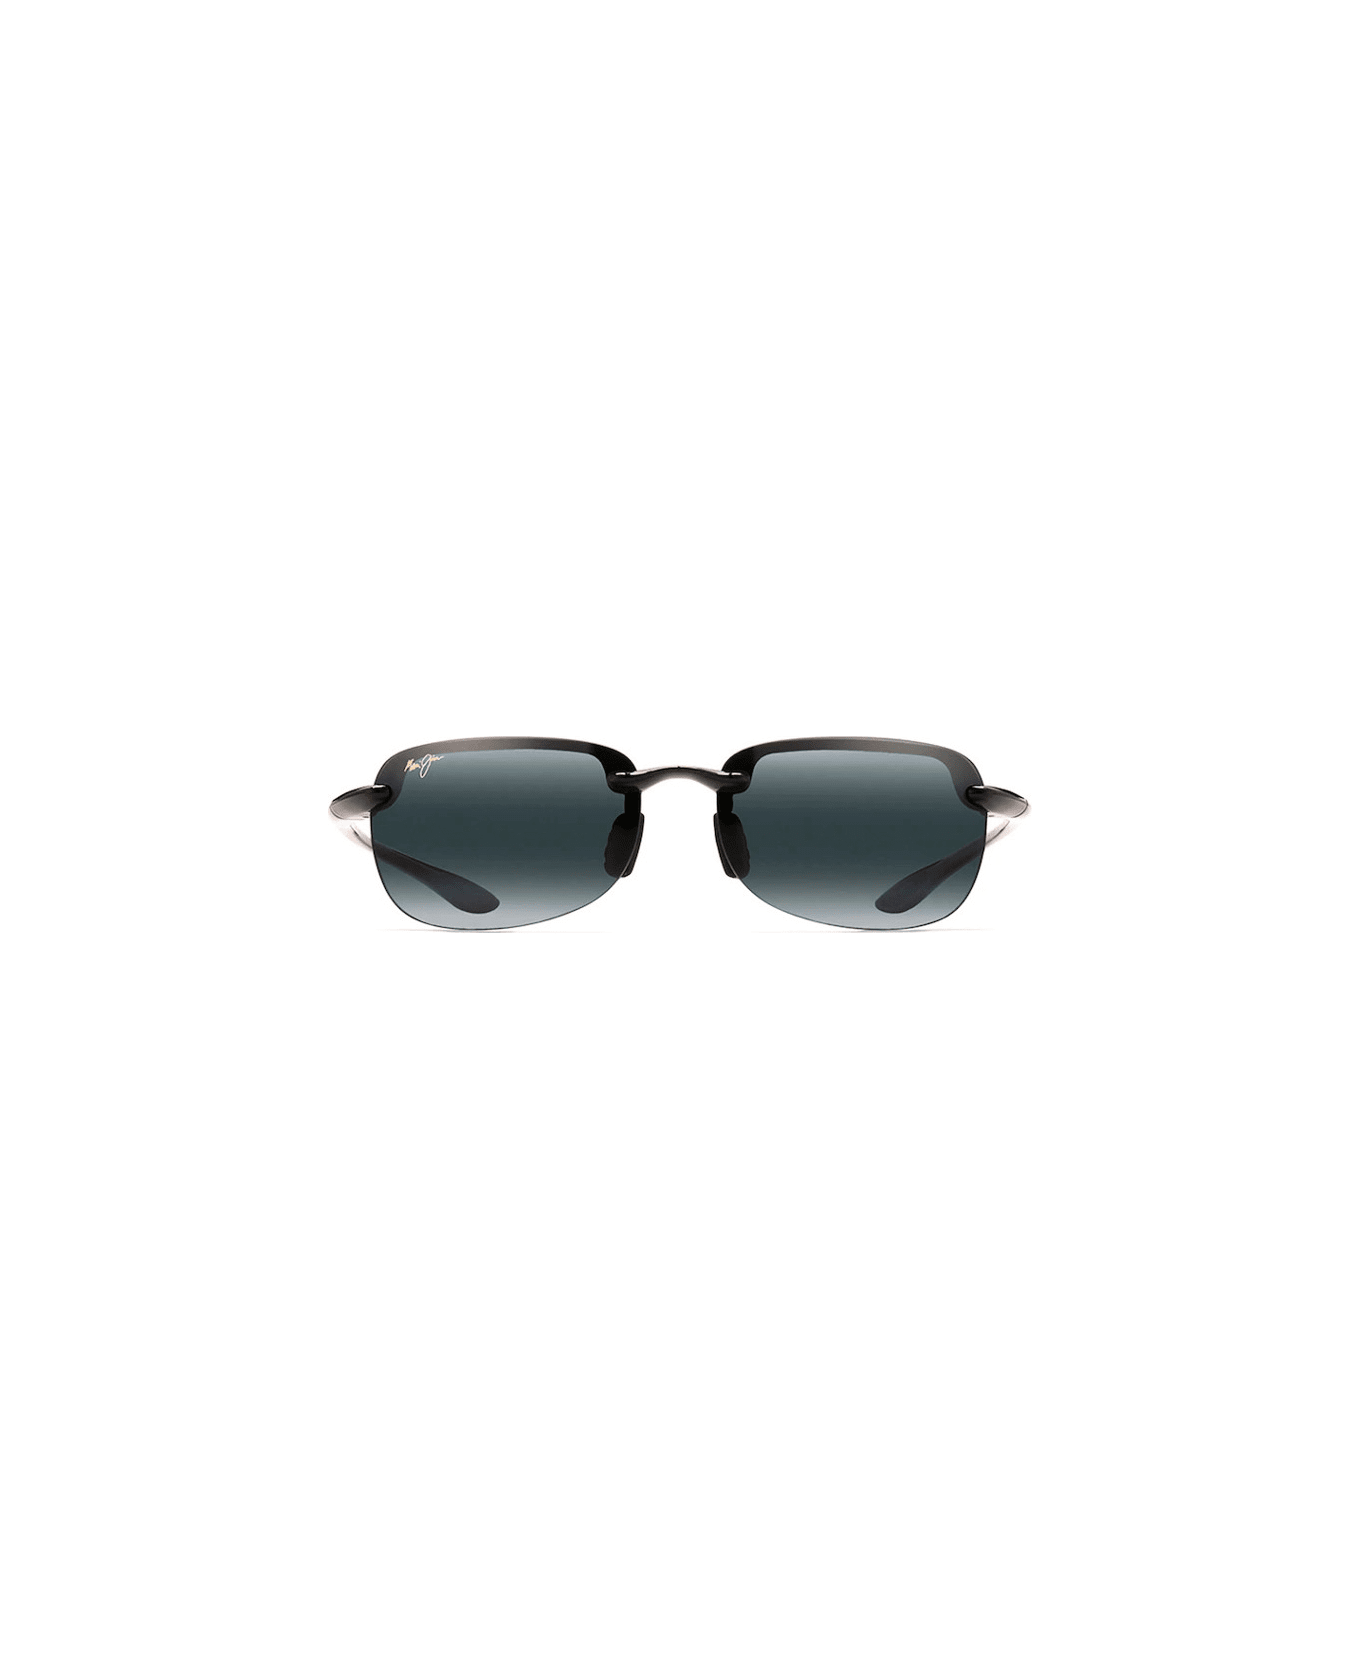 Maui Jim MJ408-02 Sunglasses - Nero